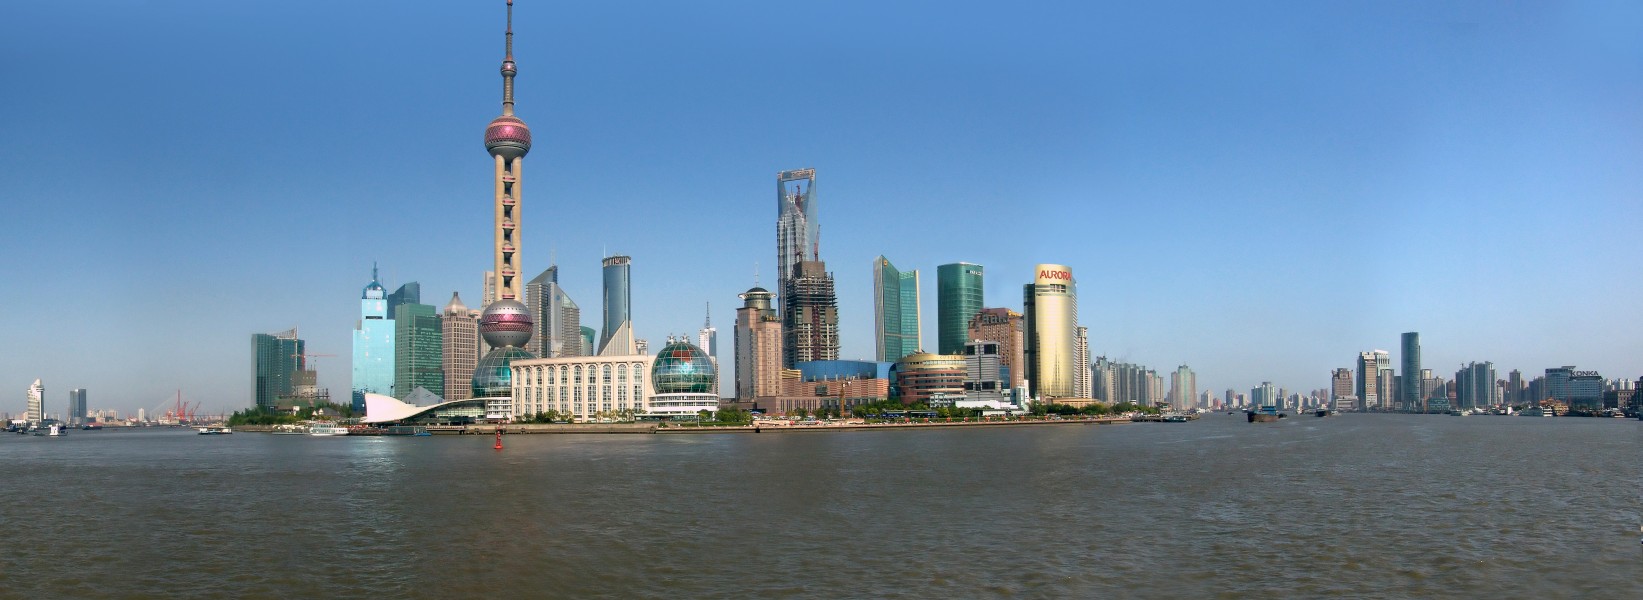 Shanghai may2008